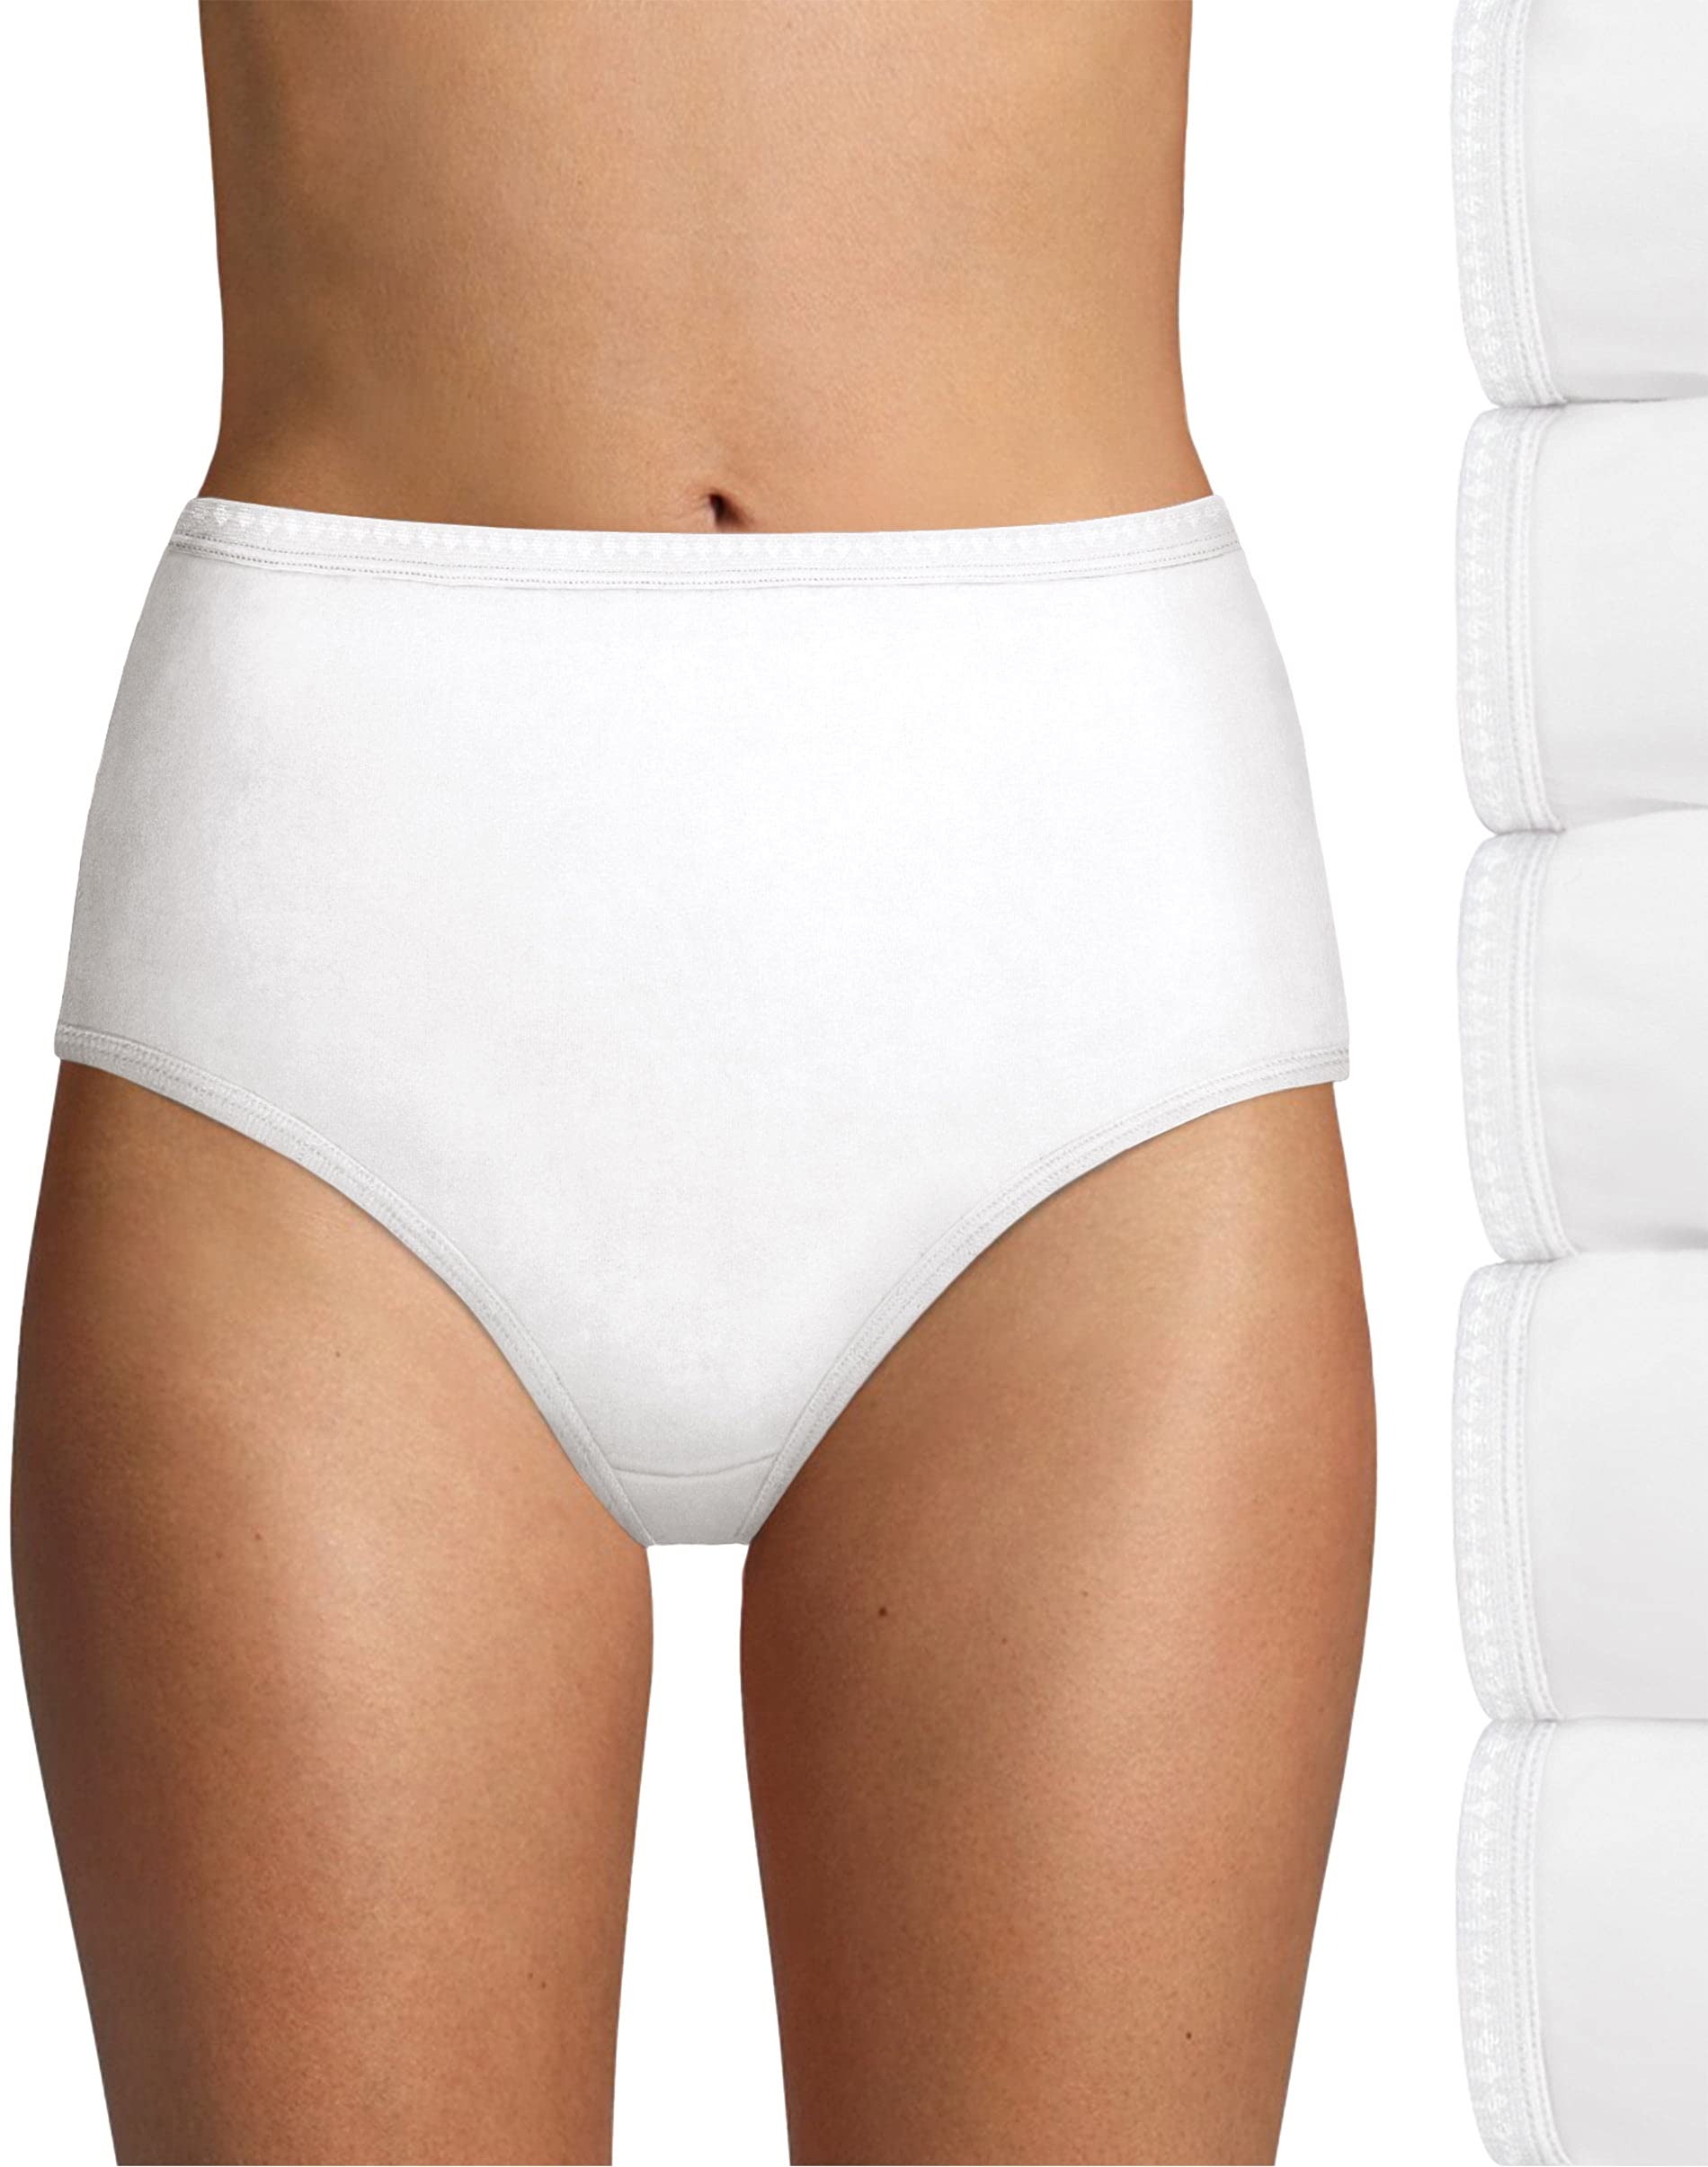 Hanes womens High-waisted Briefs Panties Pack, Lightweight Moisture-wicking Underwear, 6-pack